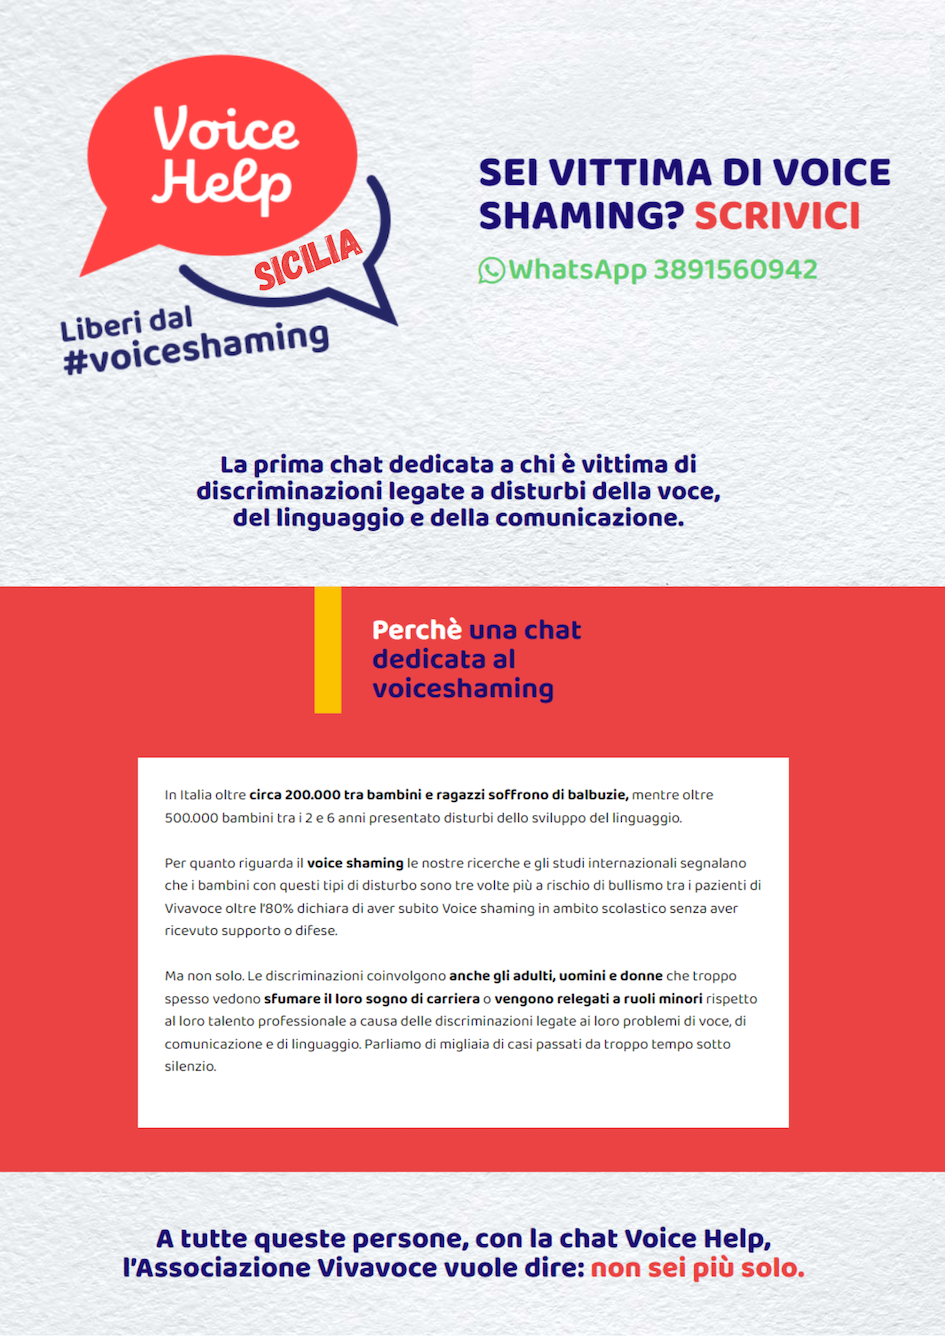 Arriva a Messina la campagna dell’Associazione Vivavoce “Voice Help Sicilia” contro il voice shaming